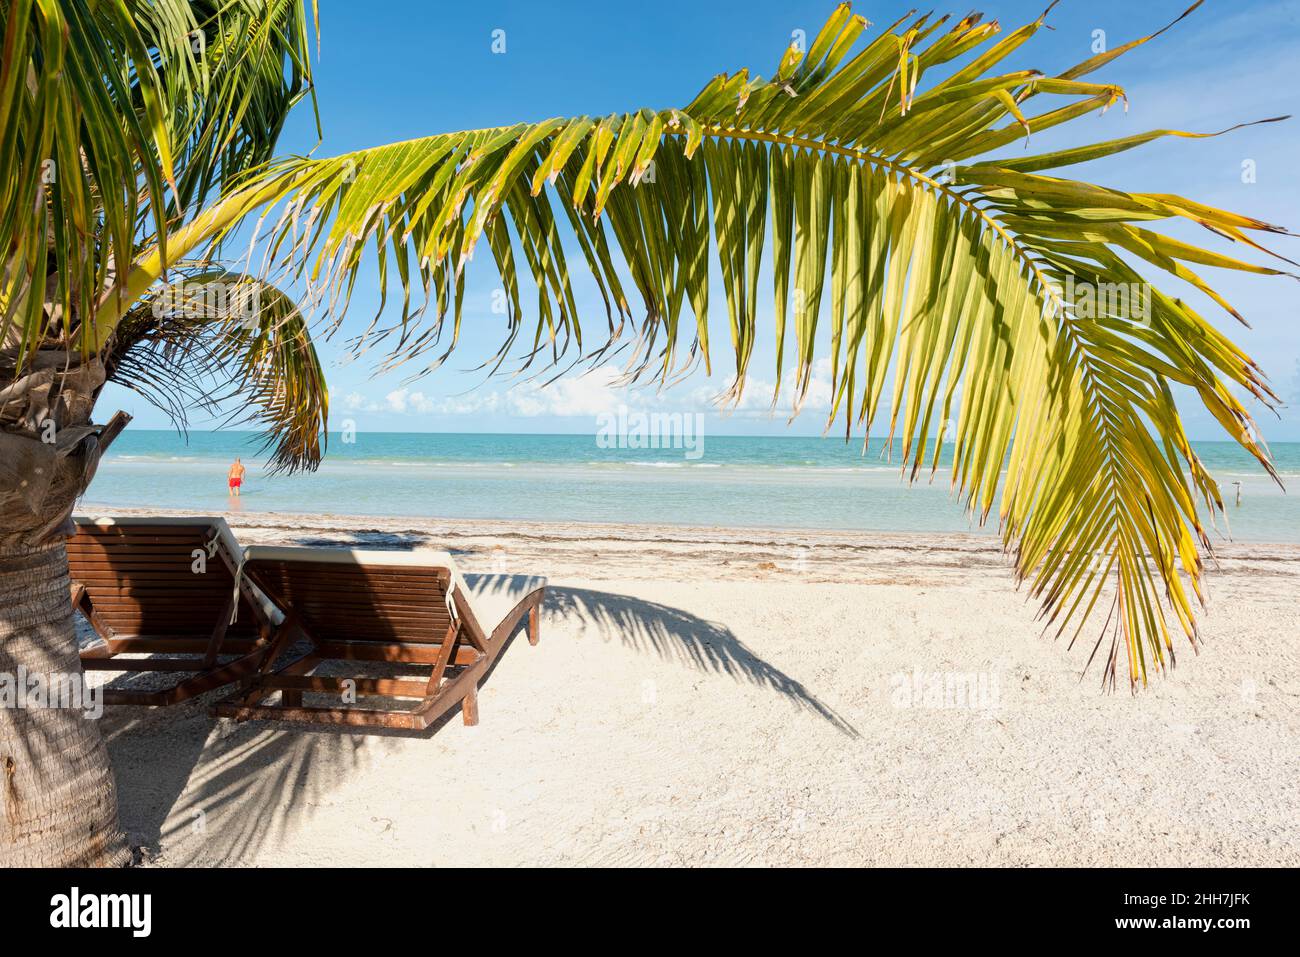 Sillas de playa y palmeras tropicales, un turista junto al mar - concepto de viaje y vacaciones. Isla Holbox México Foto de stock